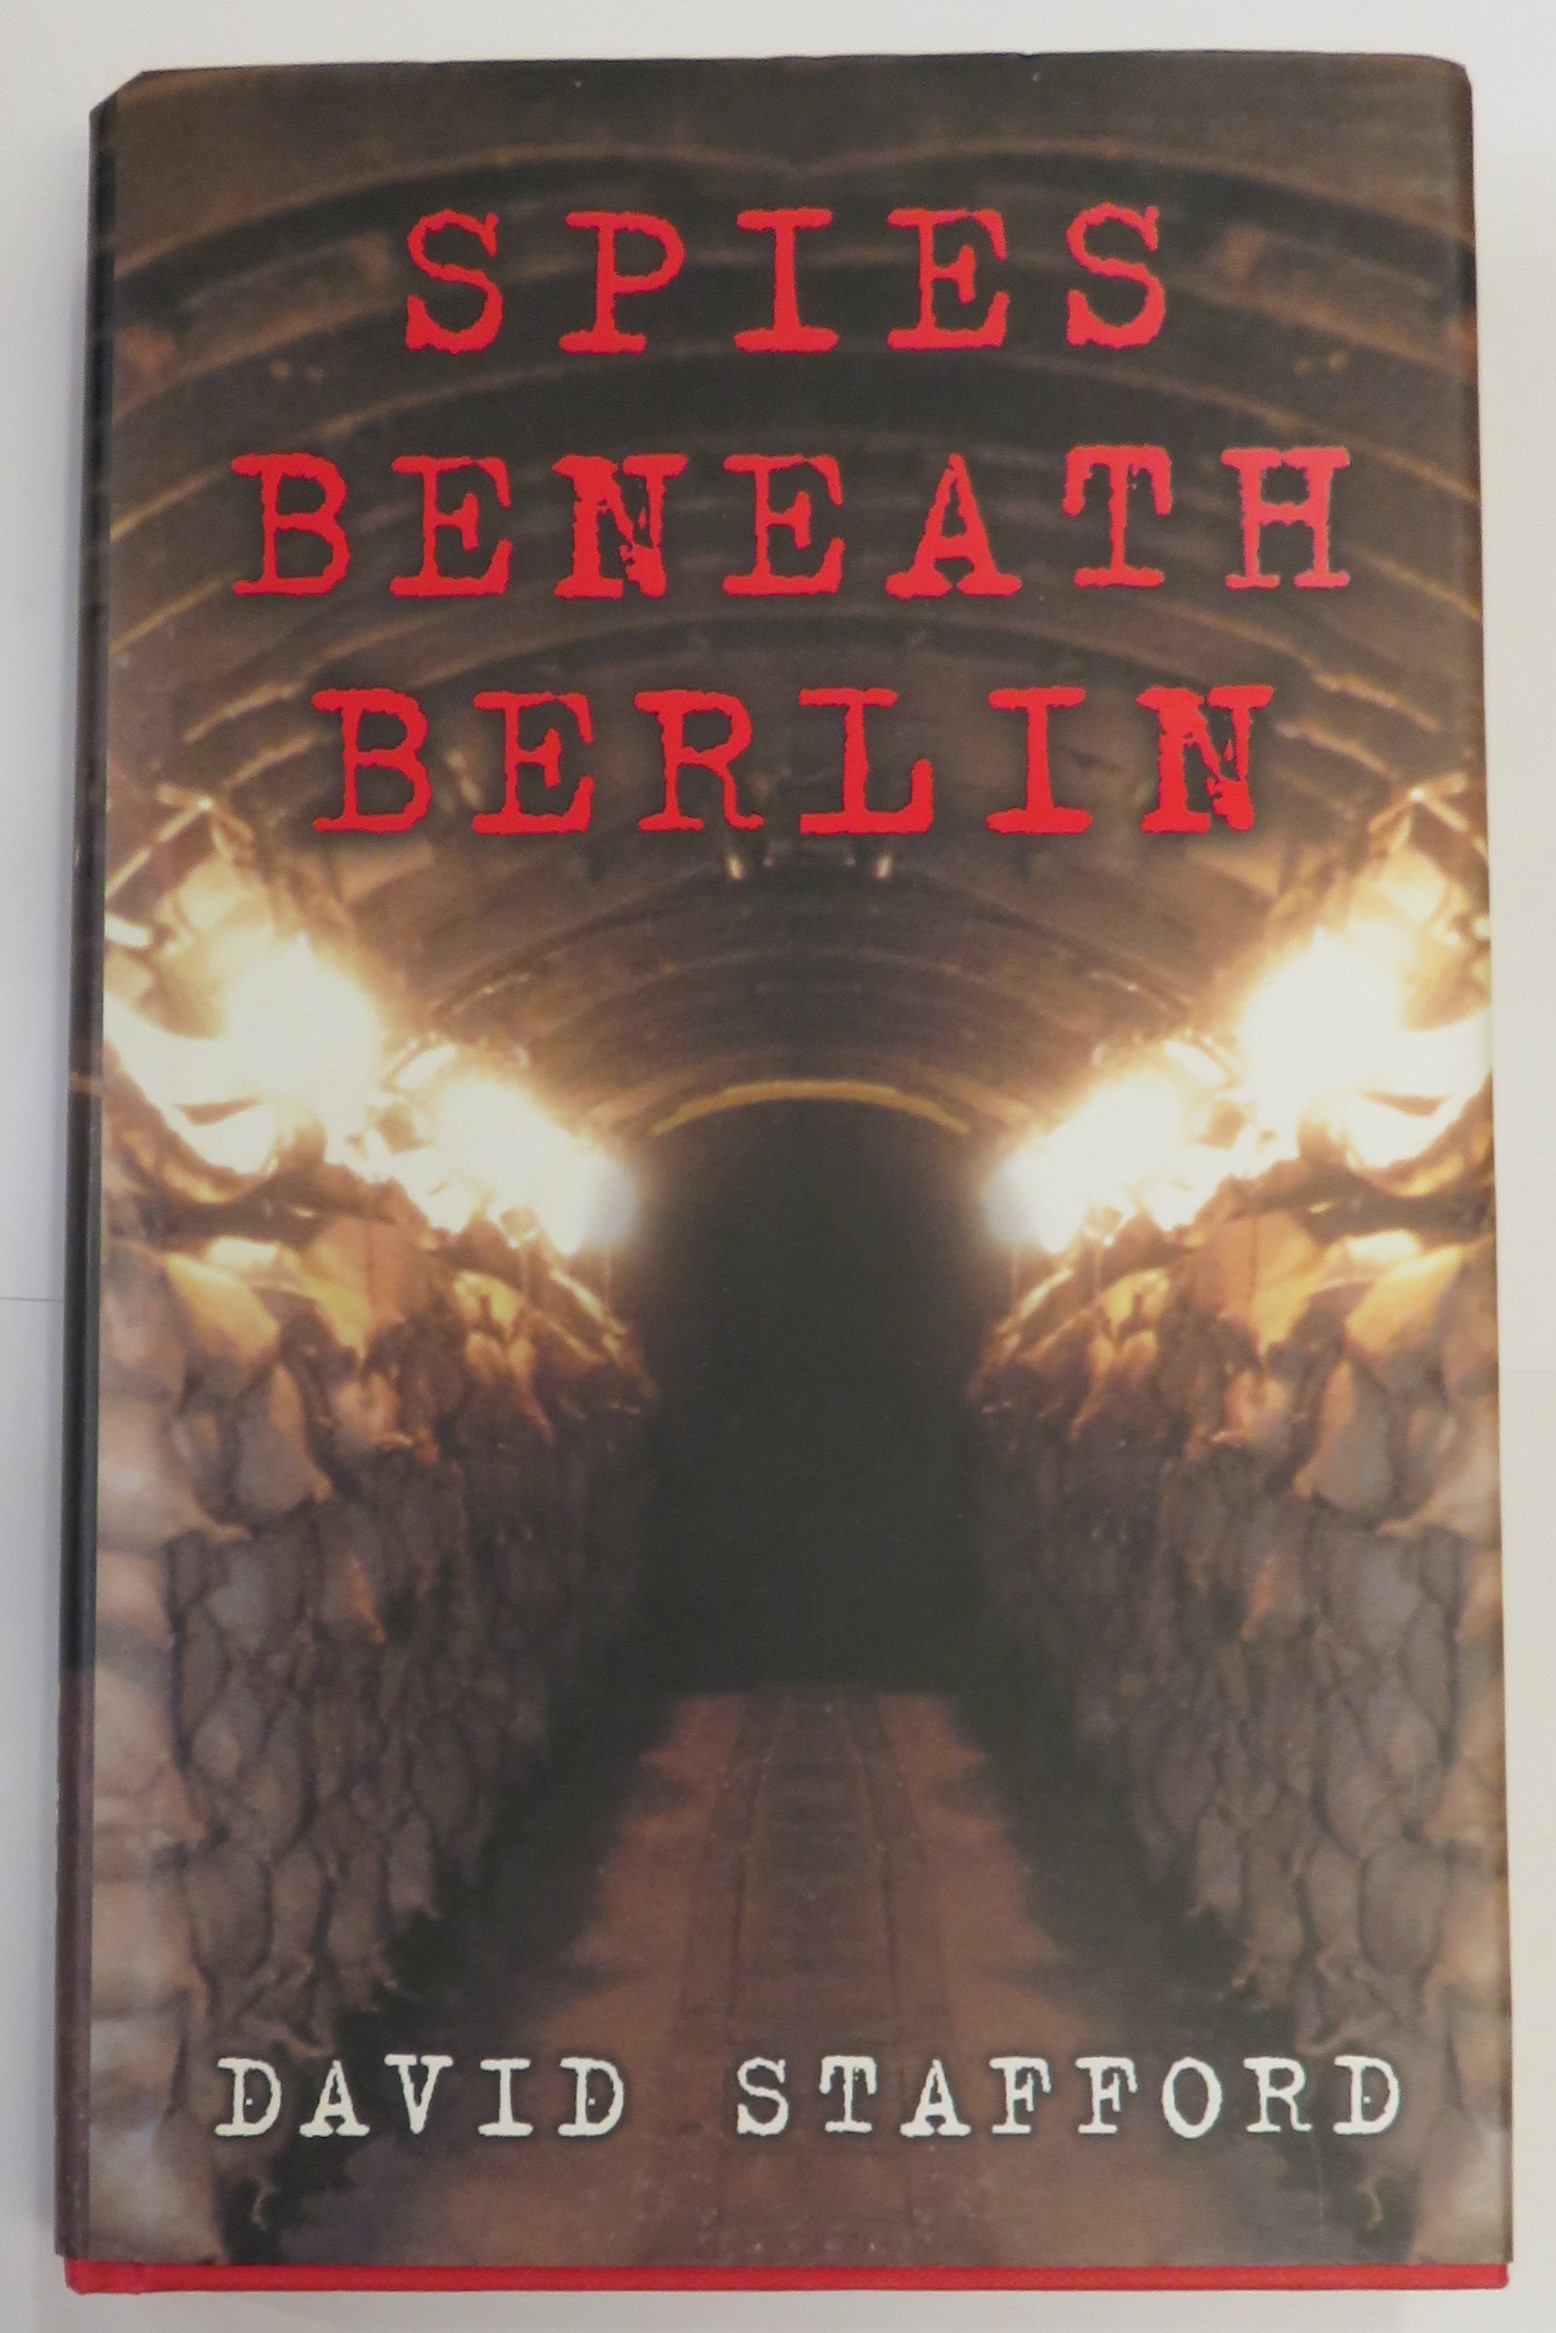 Spies Beneath Berlin 